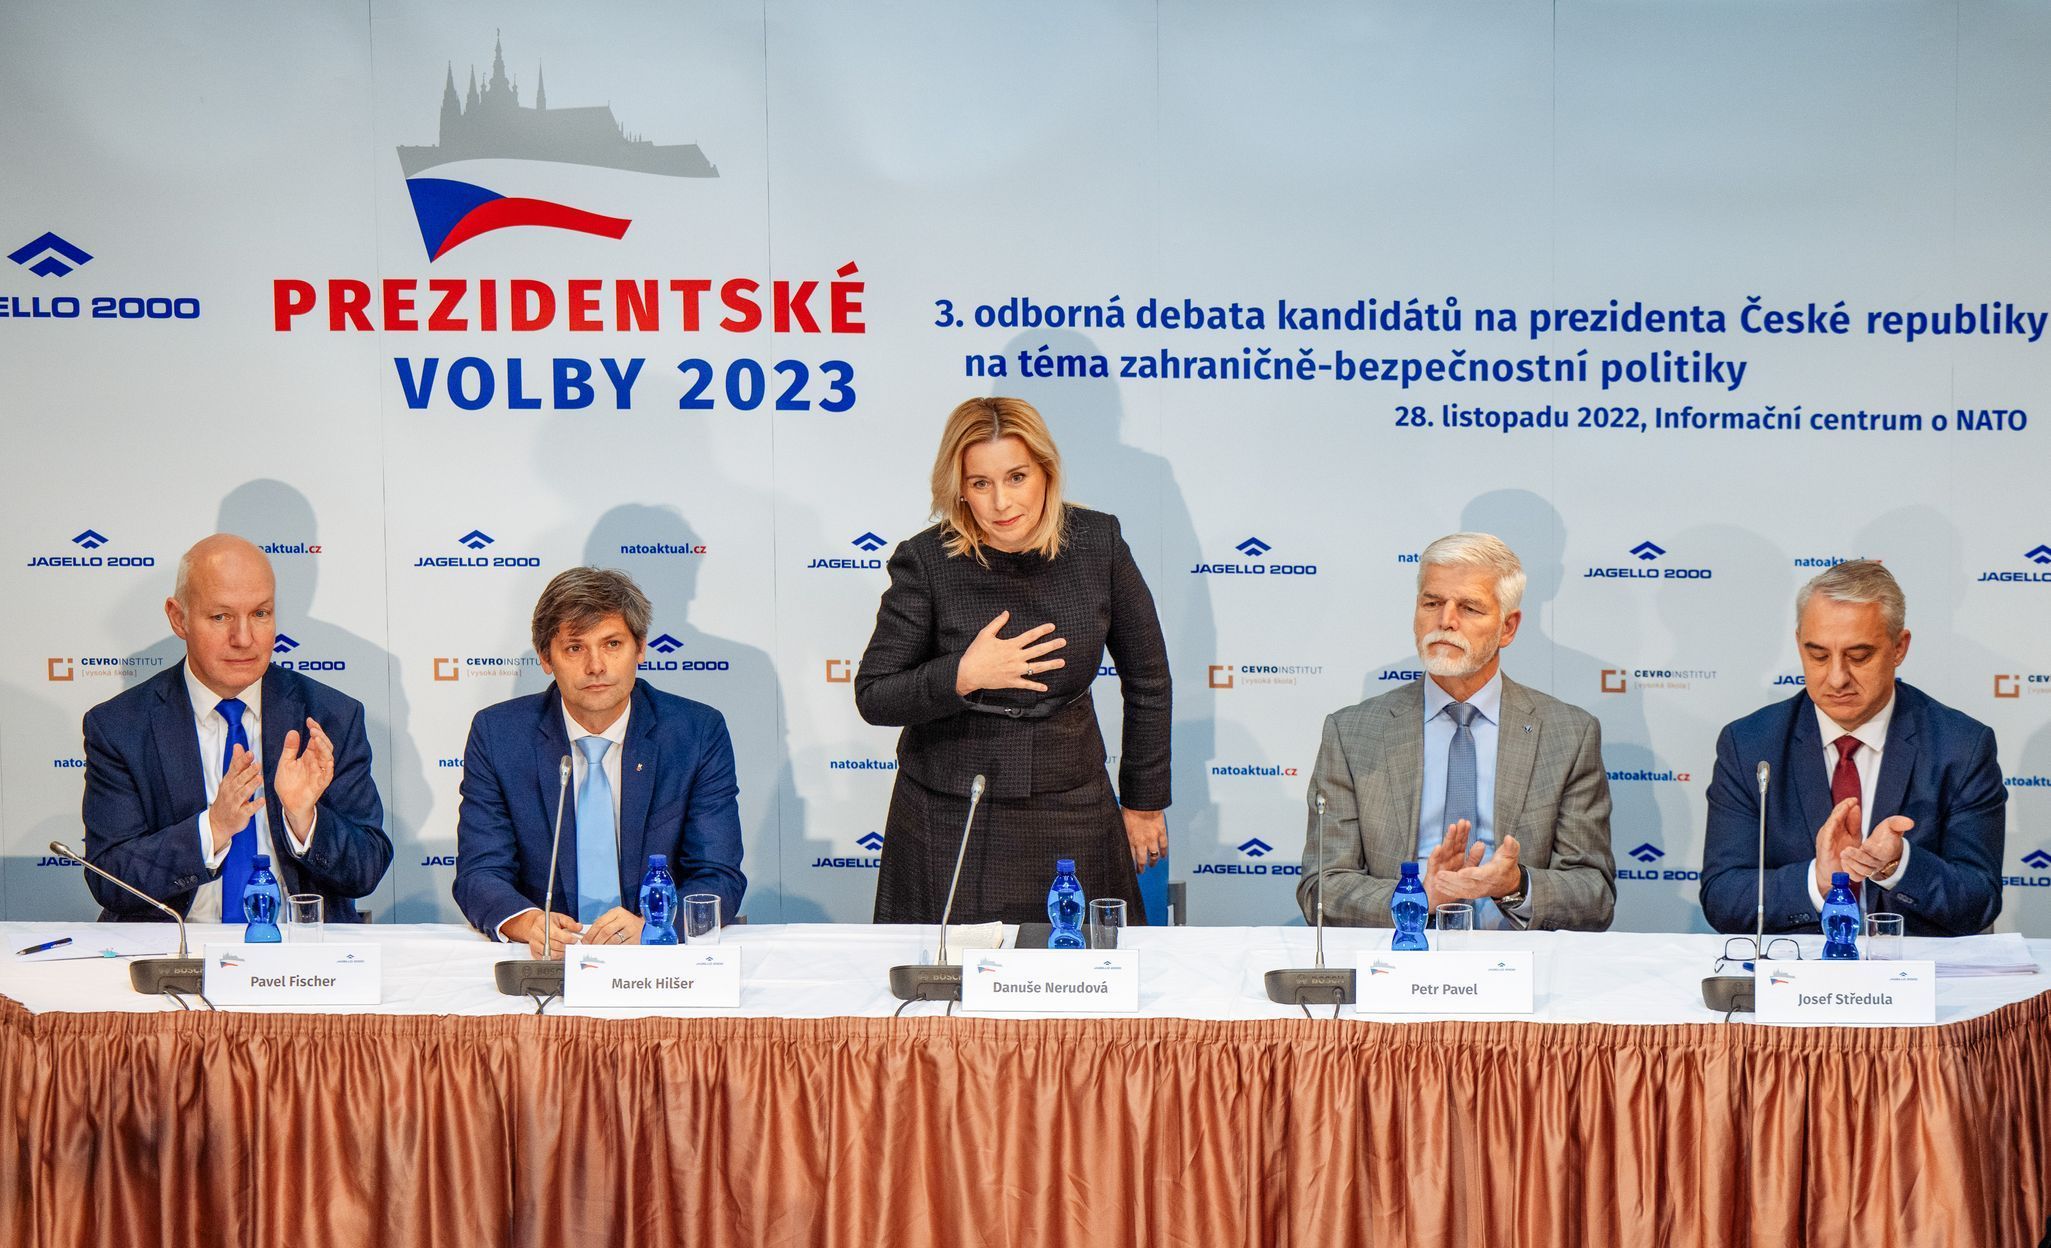 Danuše Nerudová, kampaň, prezidentské volby 2023, prezidentské volby, volby, kandidátka, kandidát